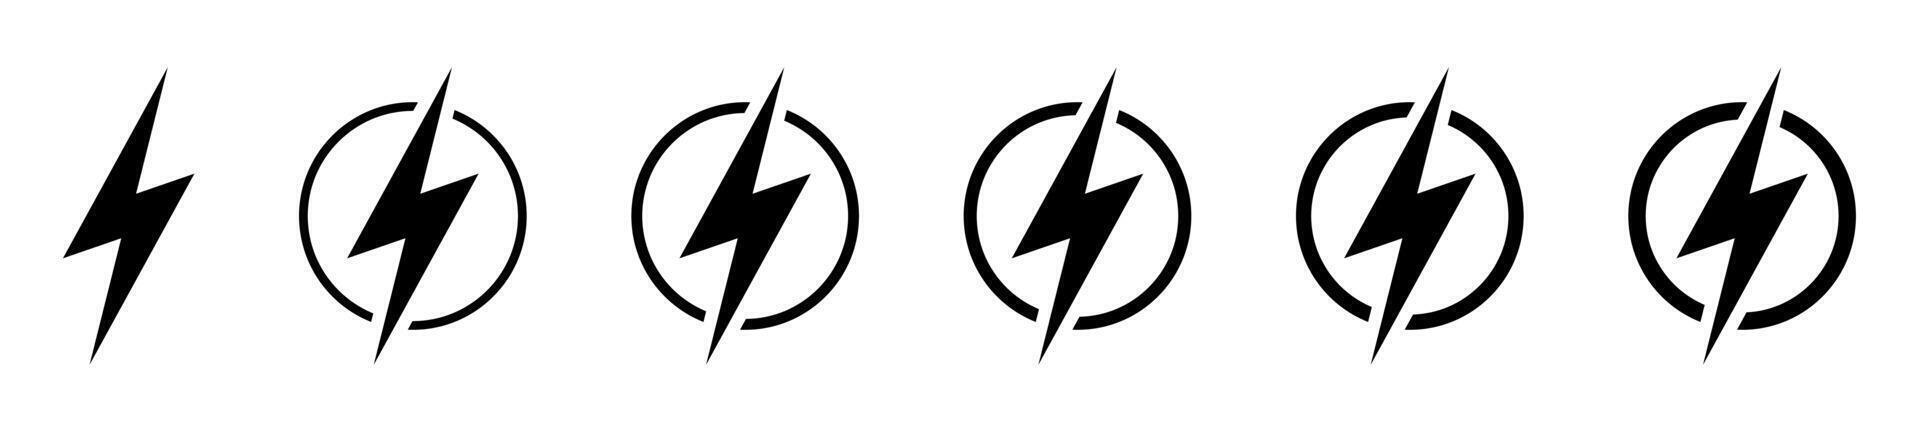 Blitz, elektrisch Leistung Symbol. Energie und Donner Elektrizität Symbol. Blitz Bolzen Zeichen im das Kreis. vektor